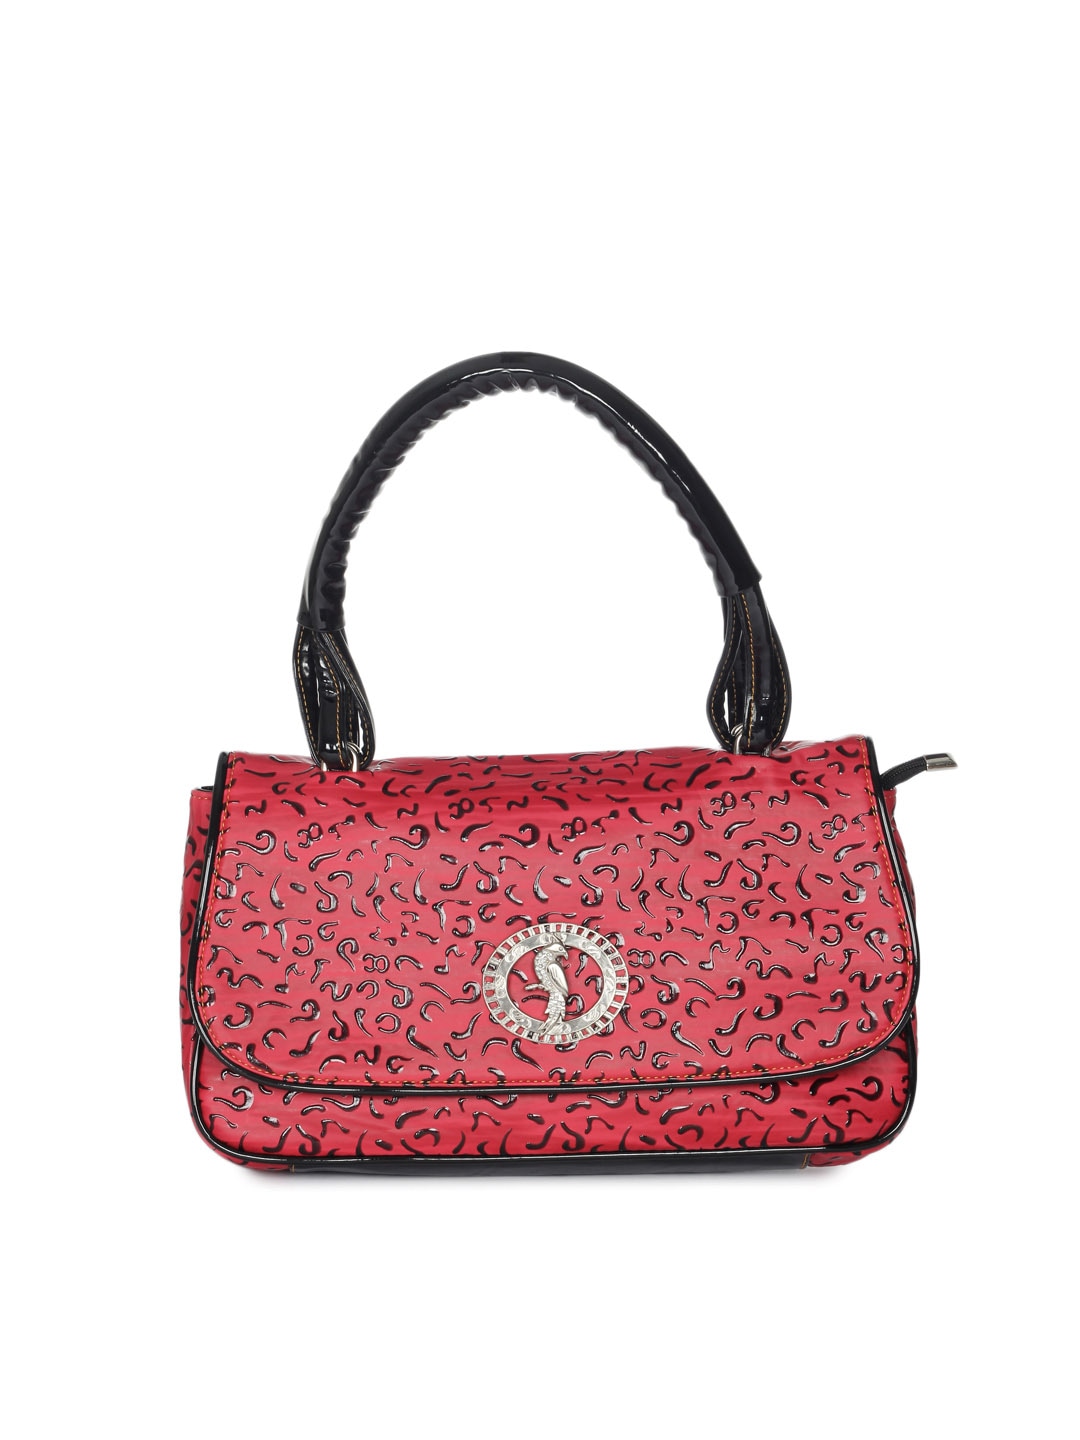 Spice Art Women Red Handbag